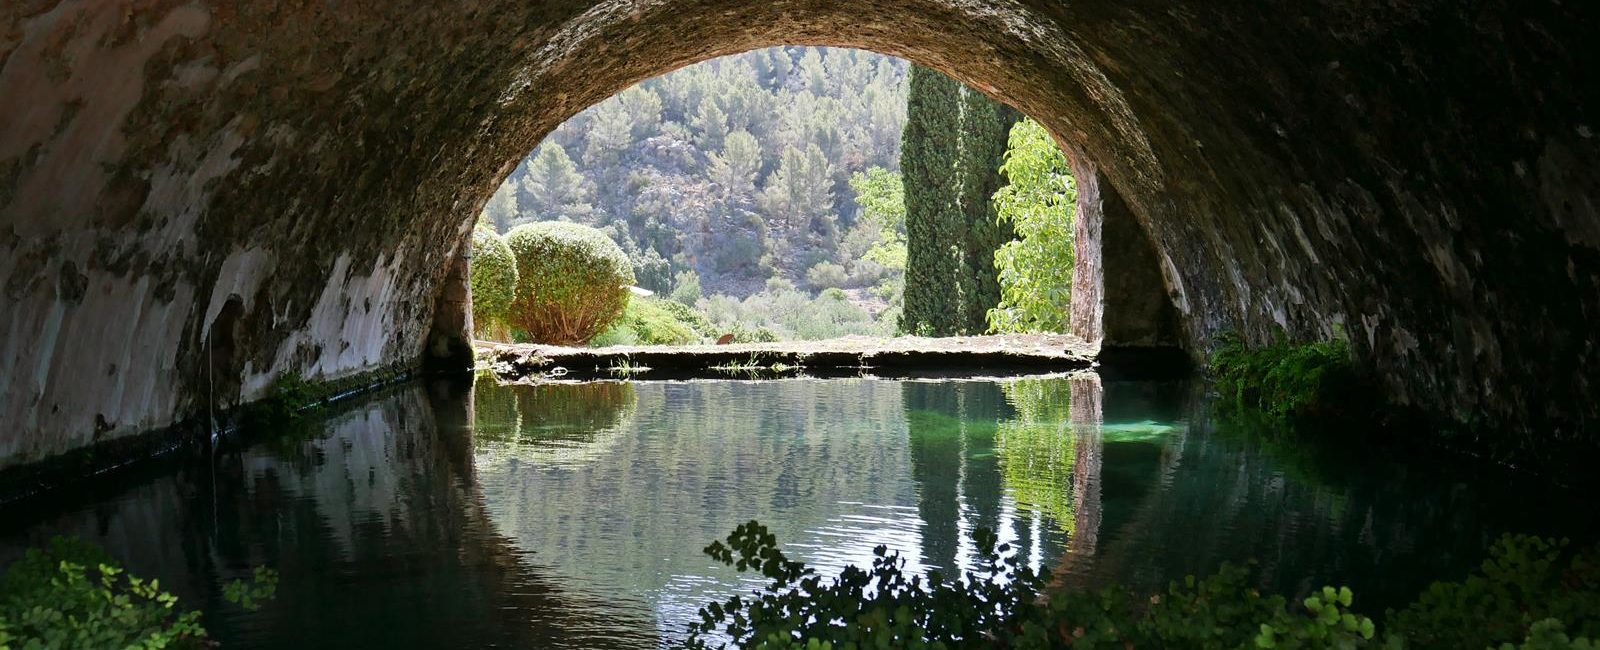 Jardines de Alfabia – the best gardens in Majorca.